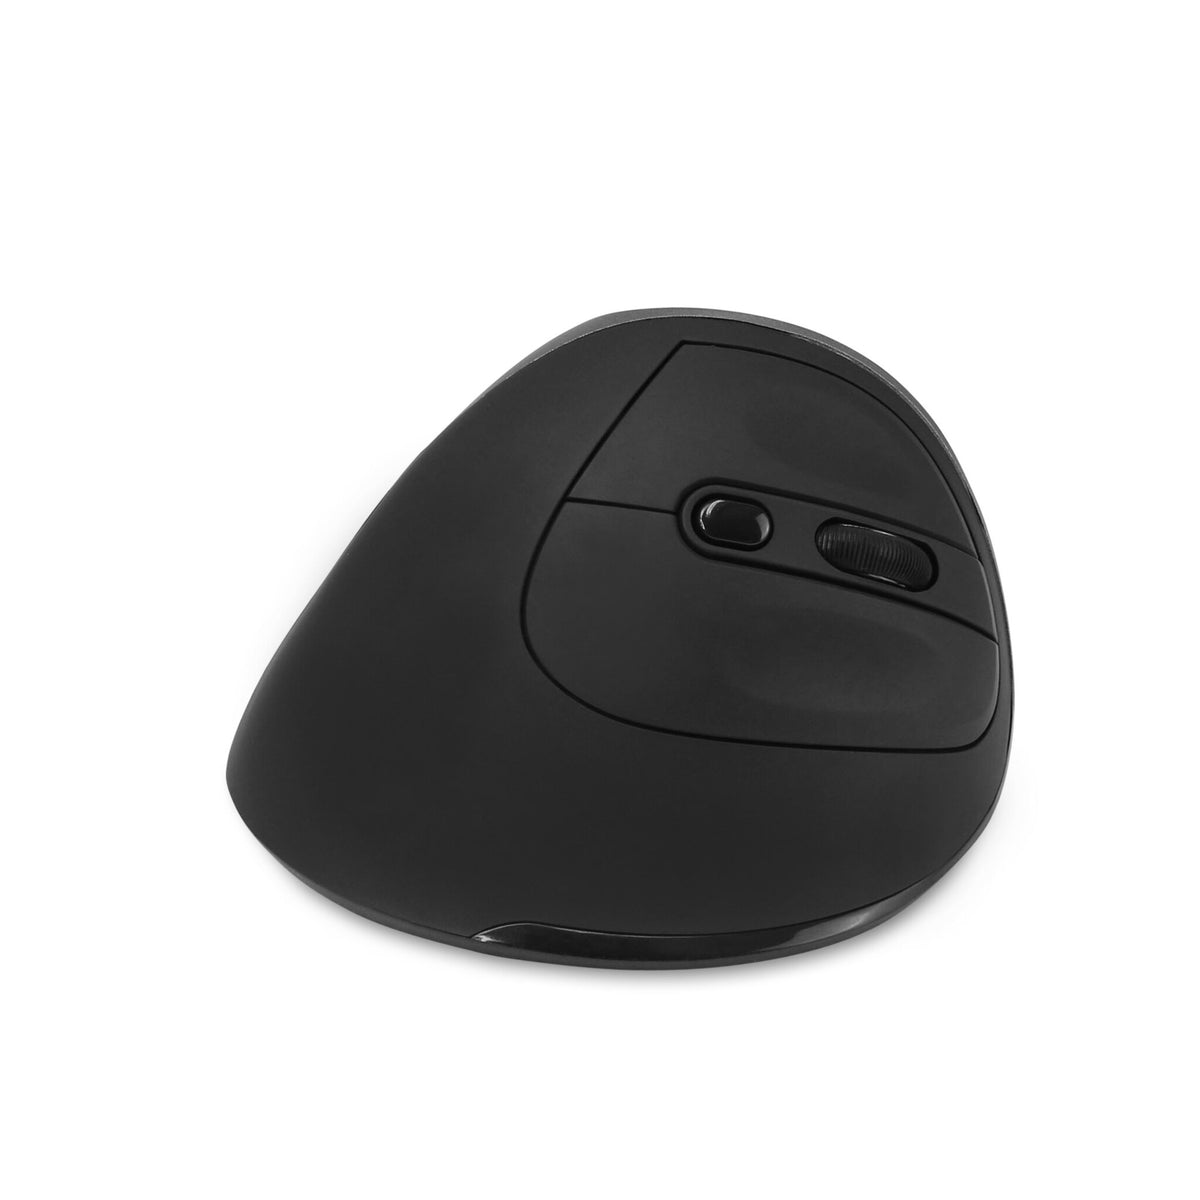 DICOTA D31981 Bluetooth mouse - 1,600 DPI